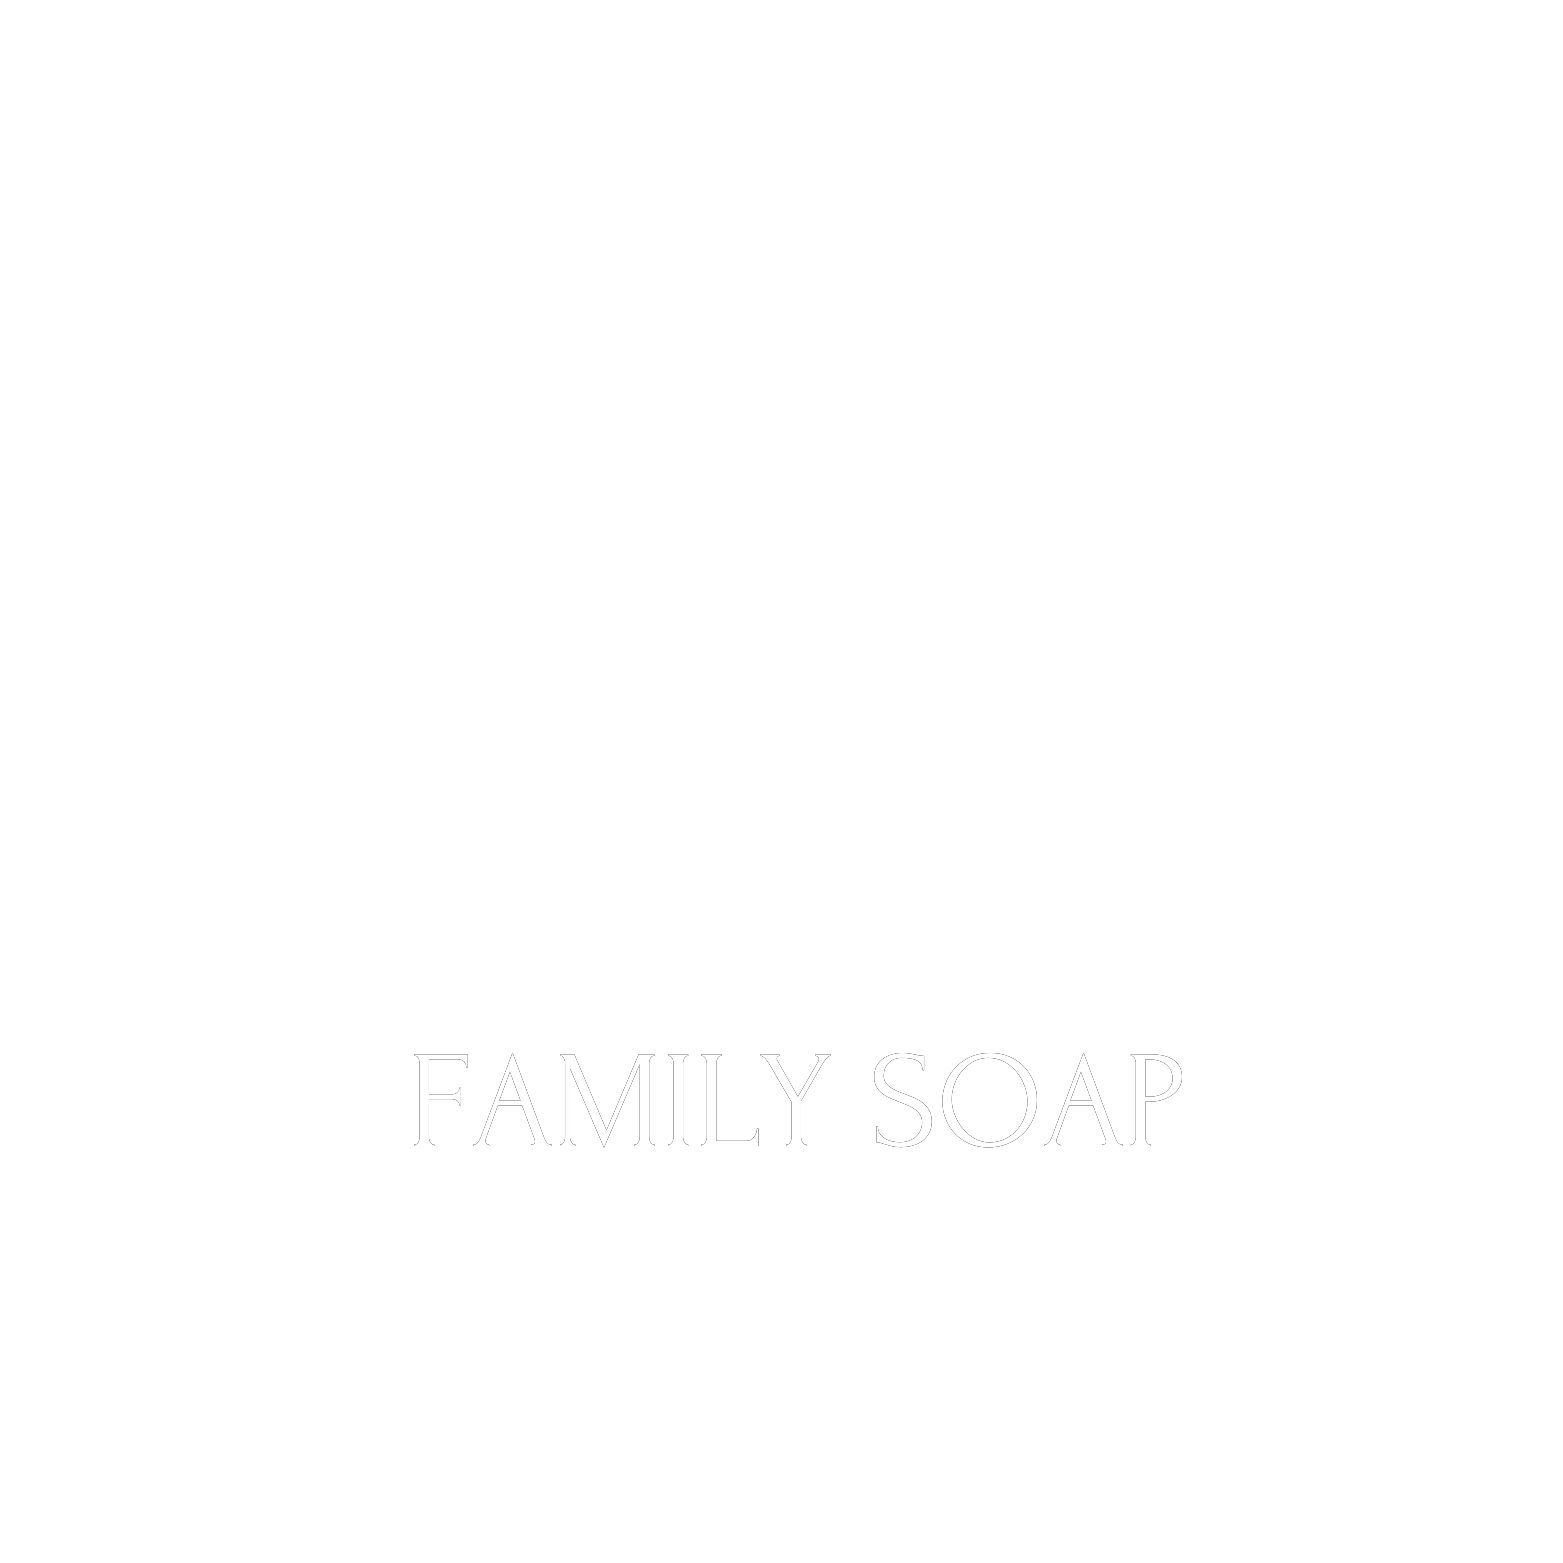 Family soap